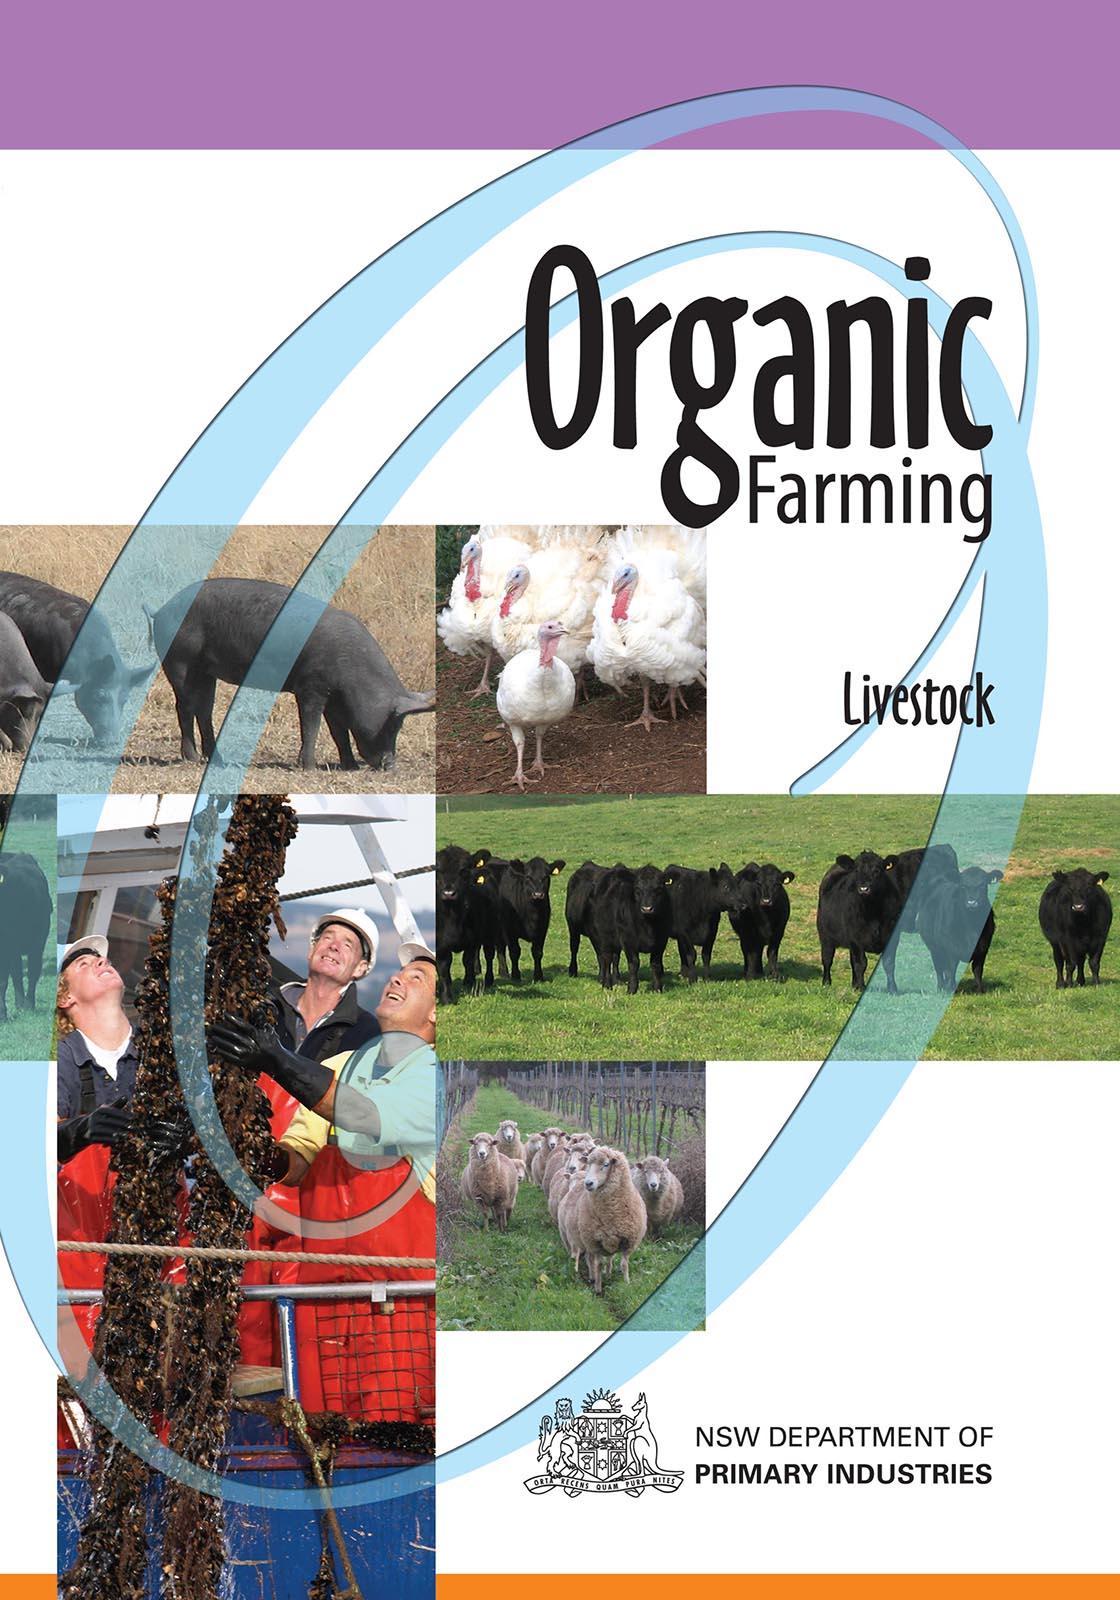 ORGANIC FARMING: LIVESTOCK